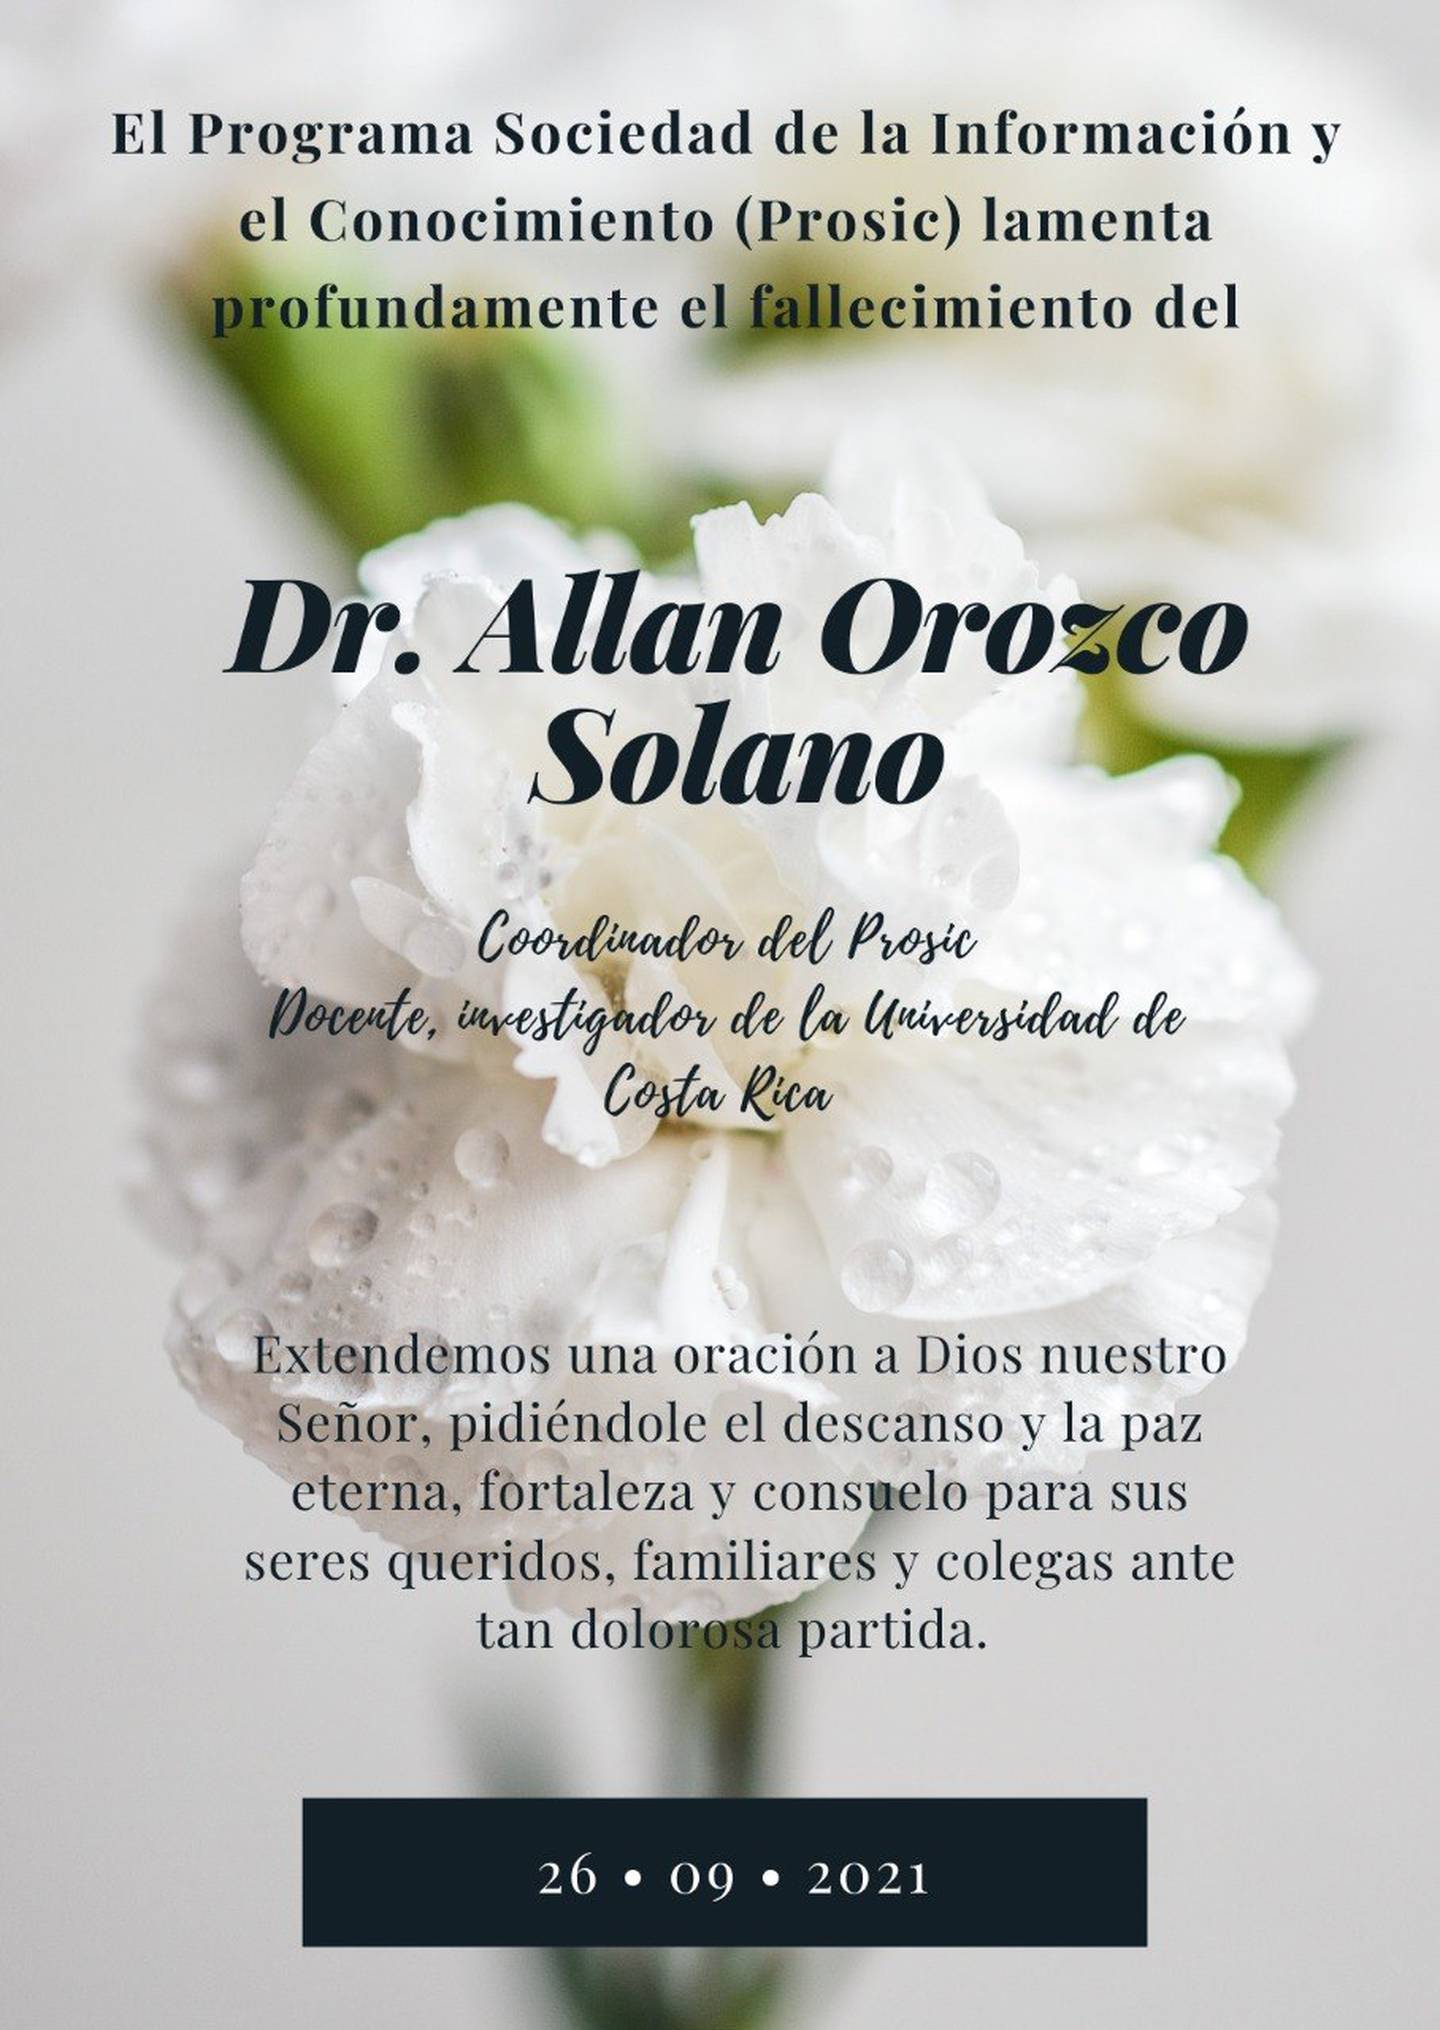 El doctor costarricense, Allan Orozco Solano, director de Programa Sociedad de la Información y el Conocimiento (Prosic) de la Universidad de Costa Rica (UCR), falleció este 26 de setiembre a causa del covid-19.